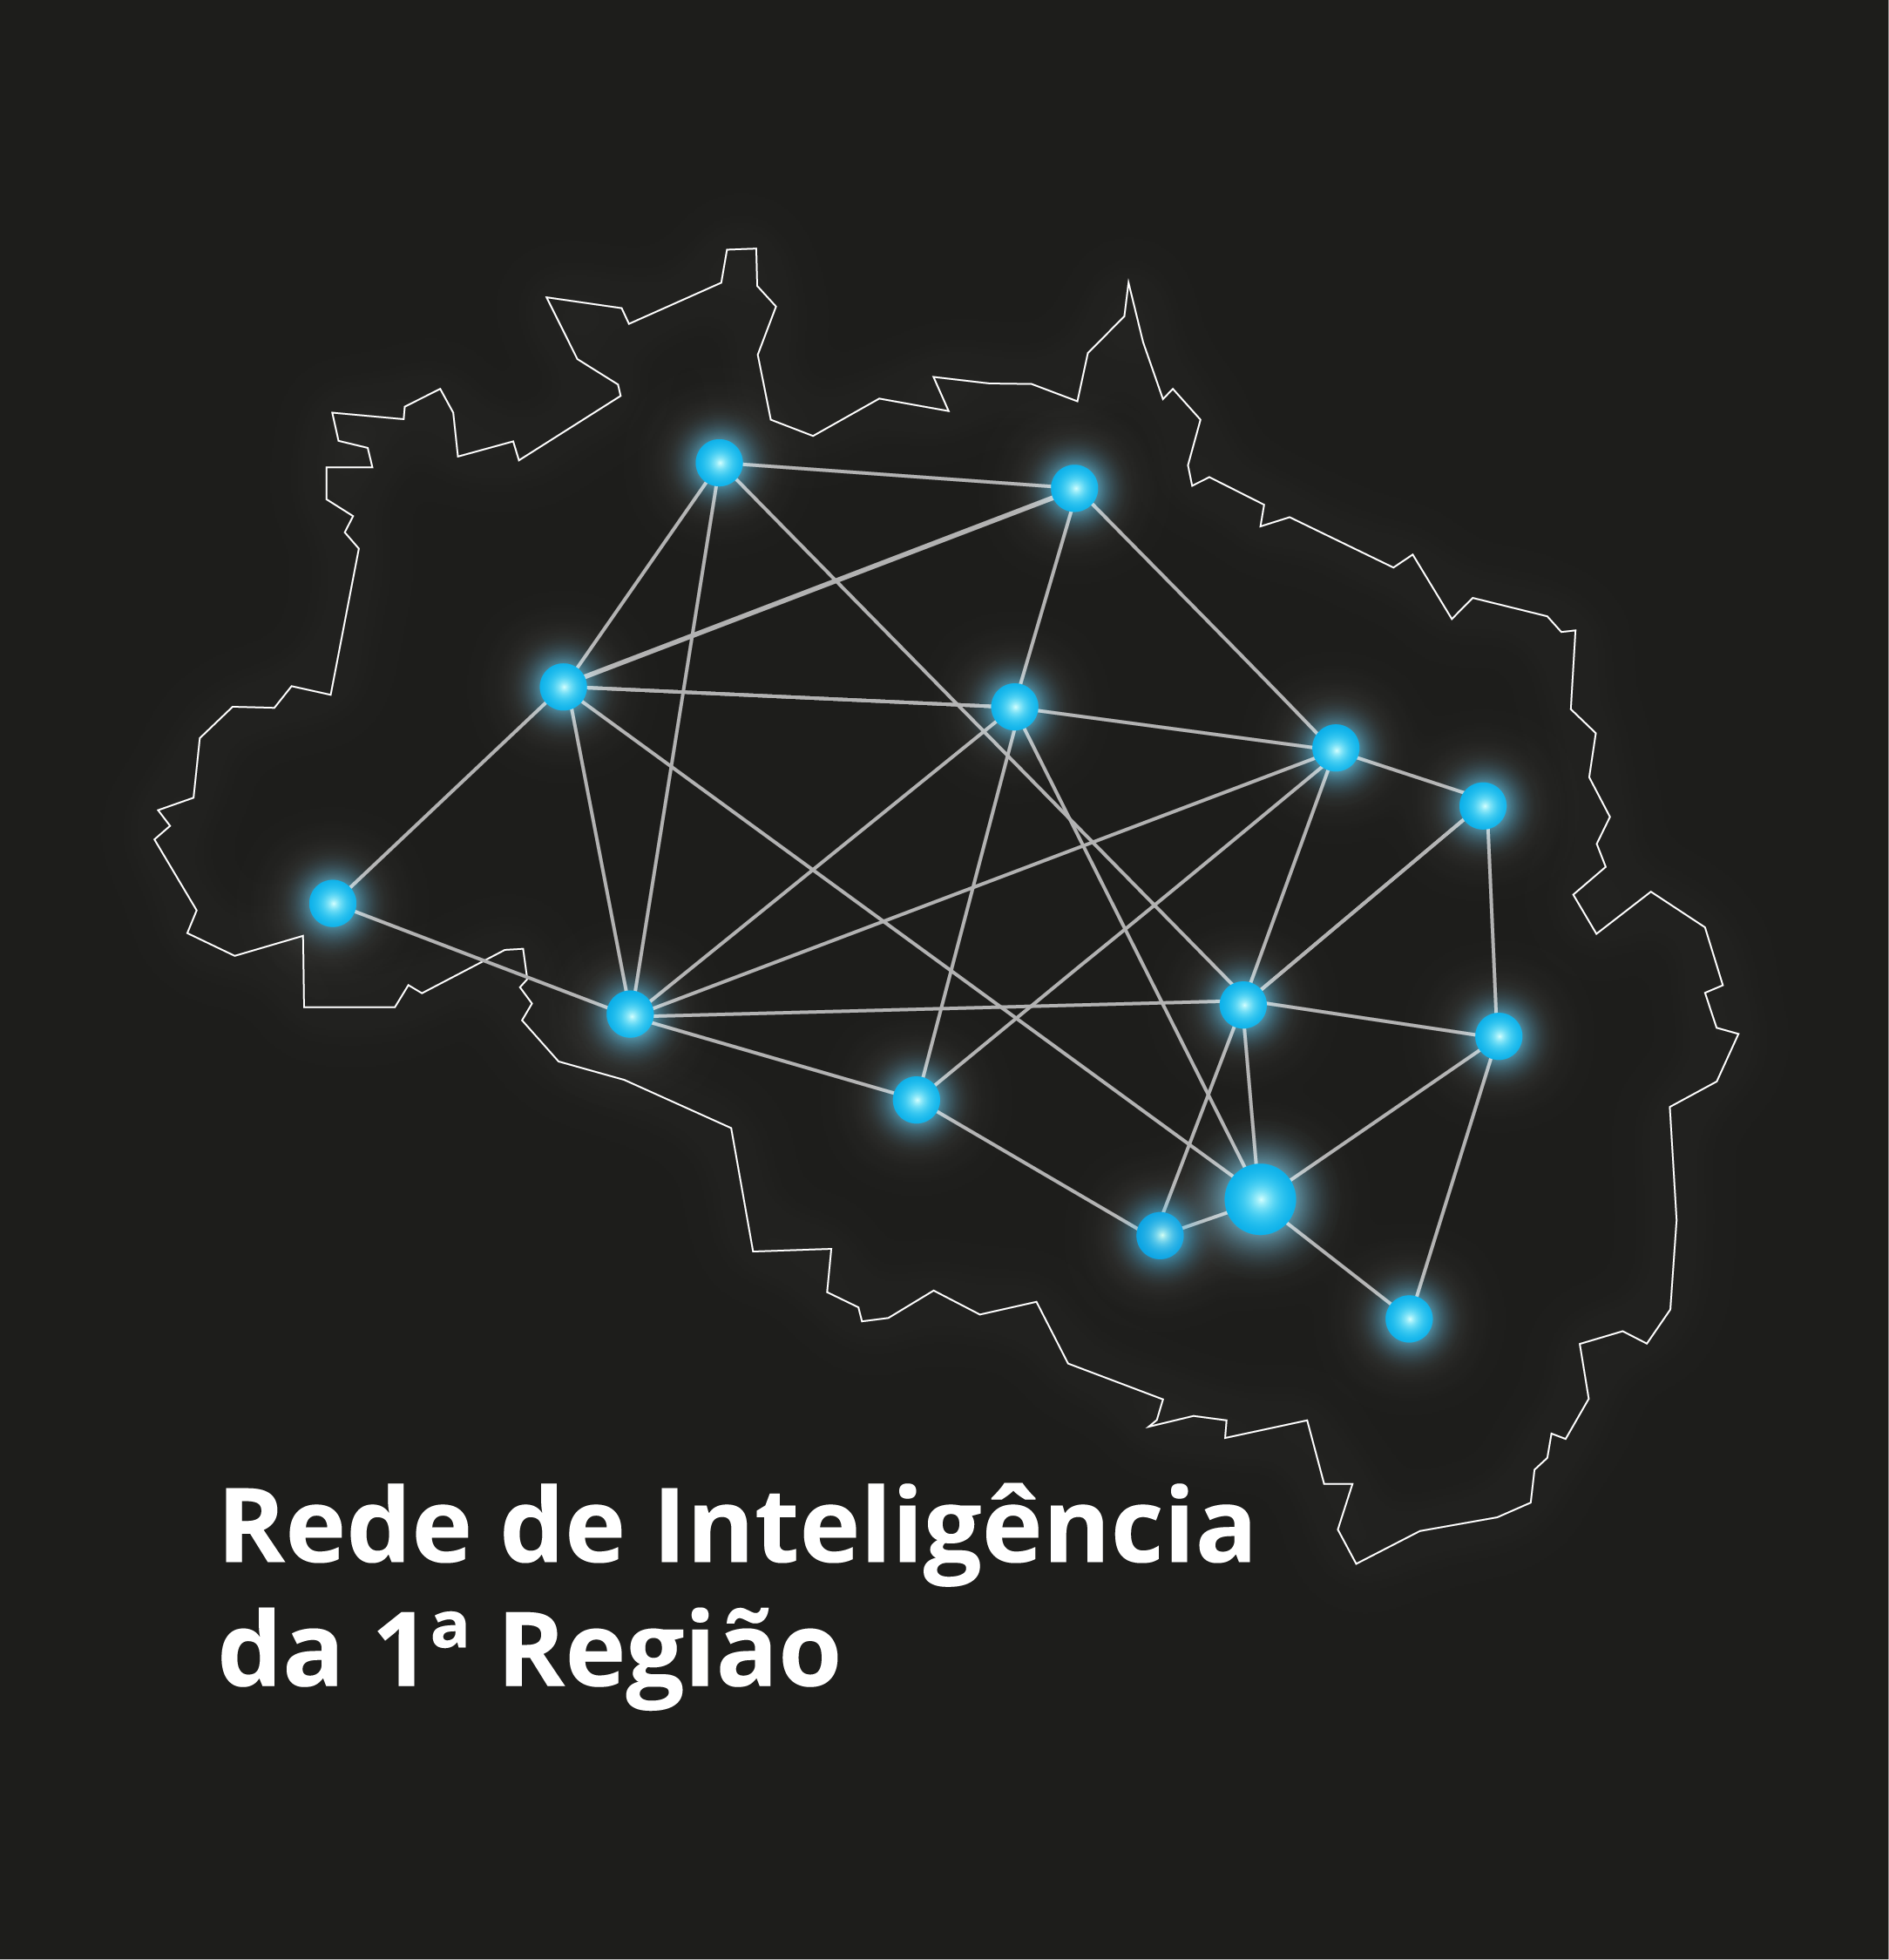 INSTITUCIONAL: Rede de Inteligência e Inovação da 1ª Região debate o tema “Povos Indígenas no Estado de Roraima” na próxima terça-feira (7)